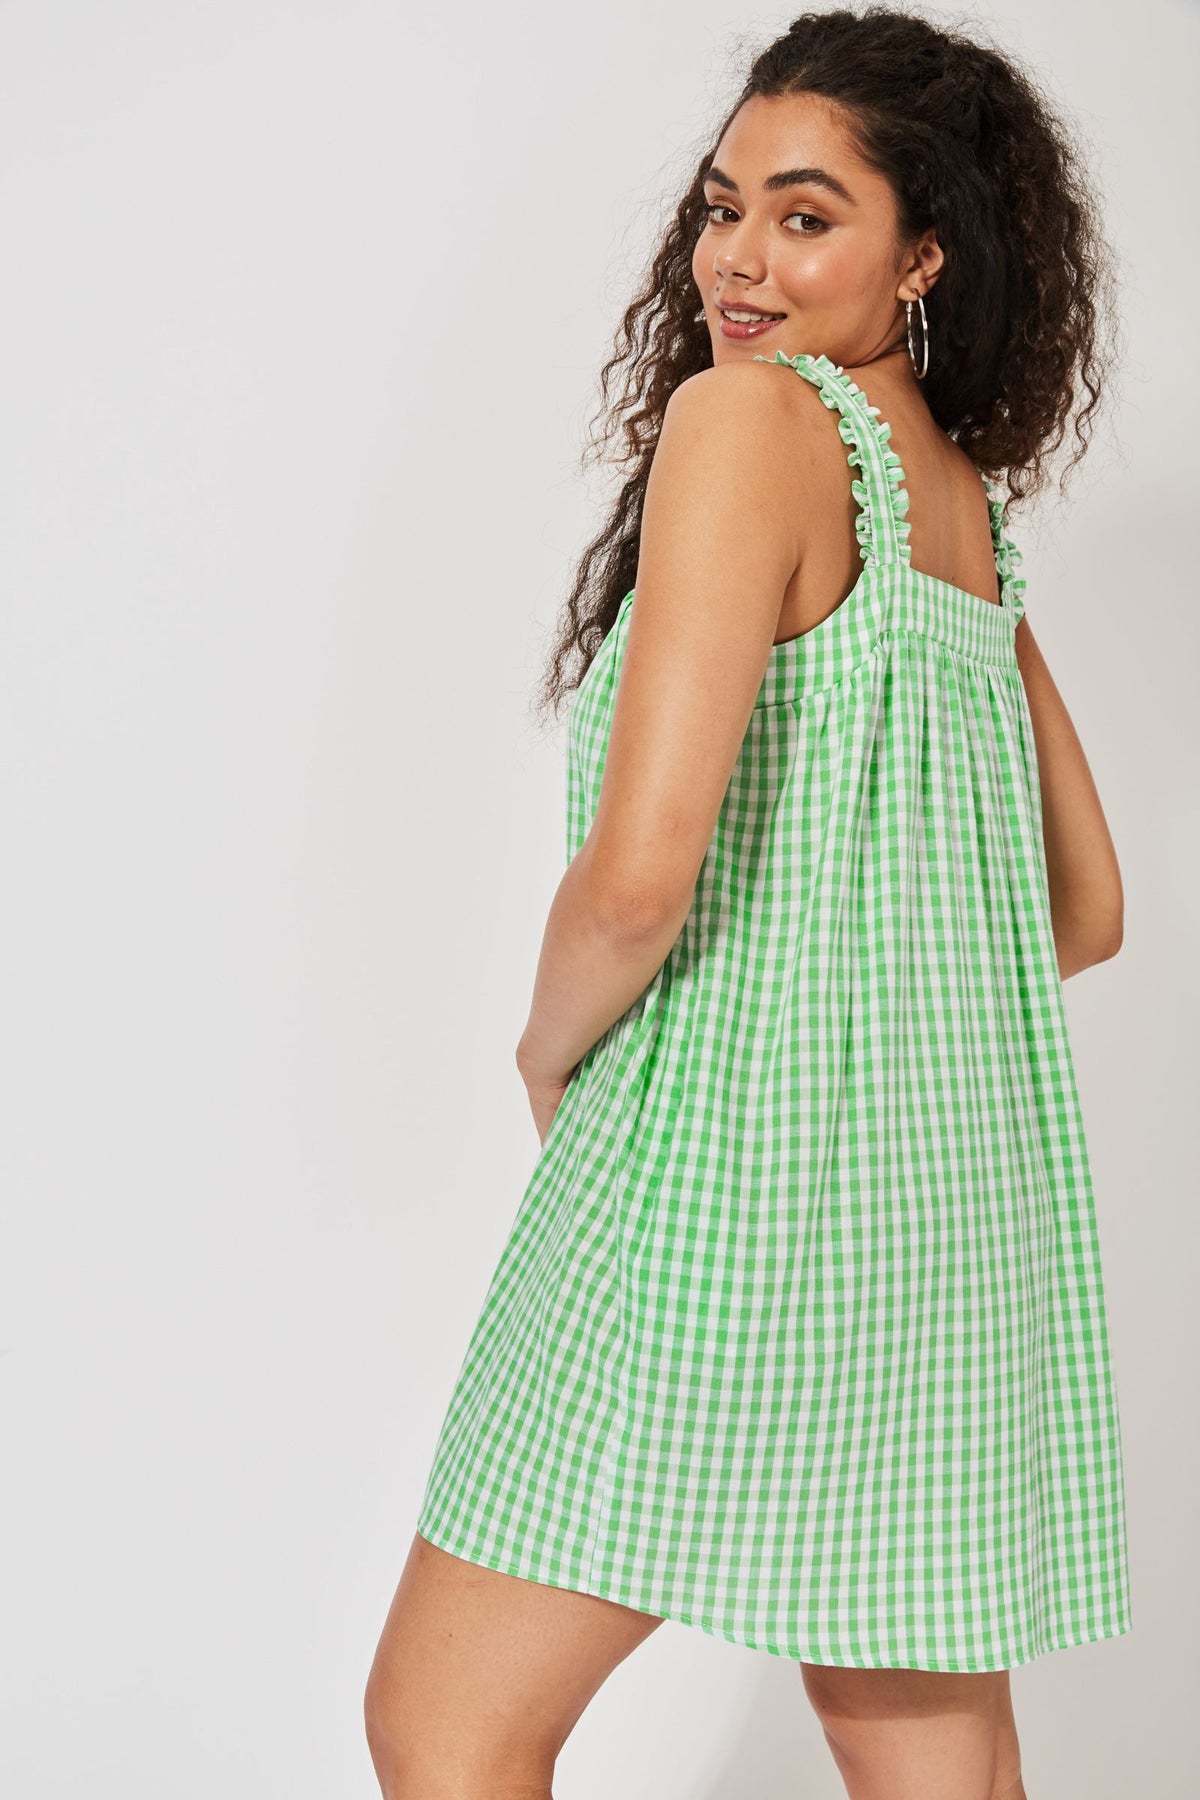 Rio Tank Dress - Lime - HAVEN